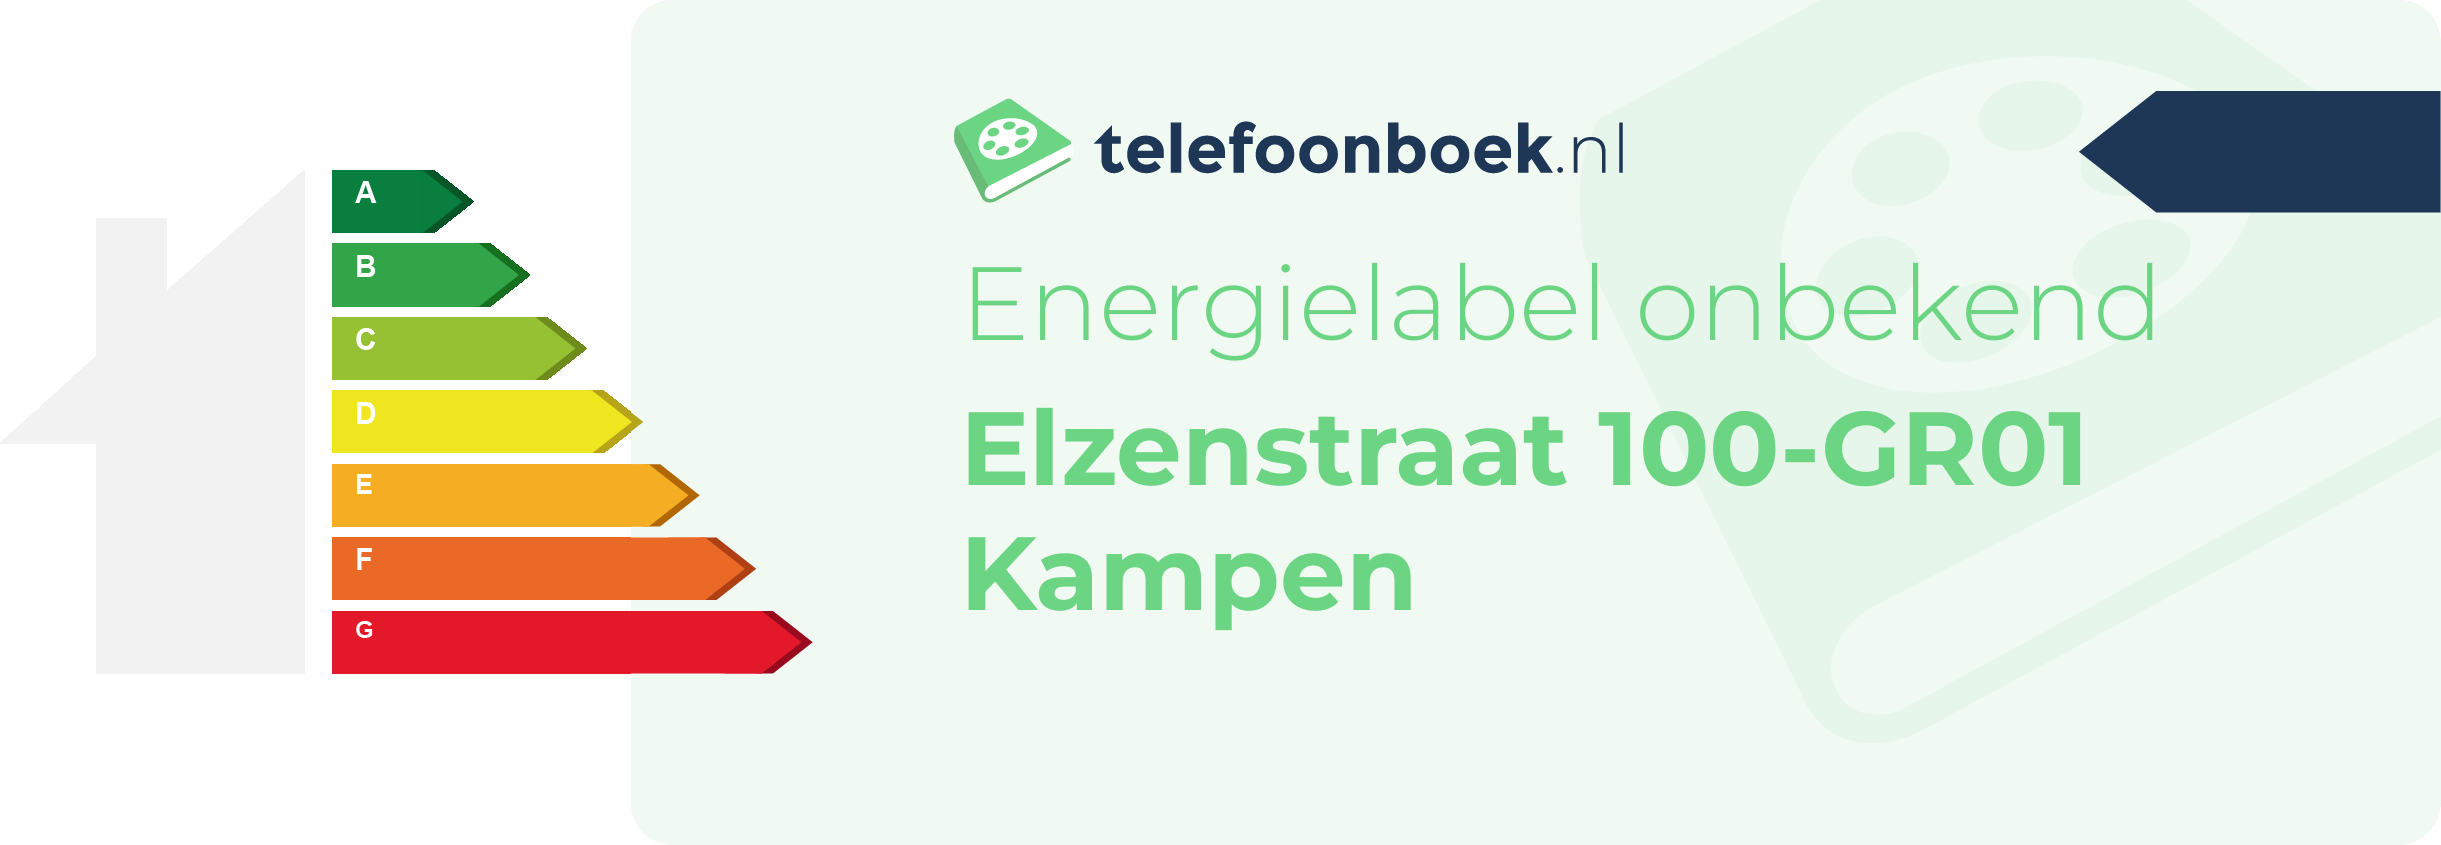 Energielabel Elzenstraat 100-GR01 Kampen